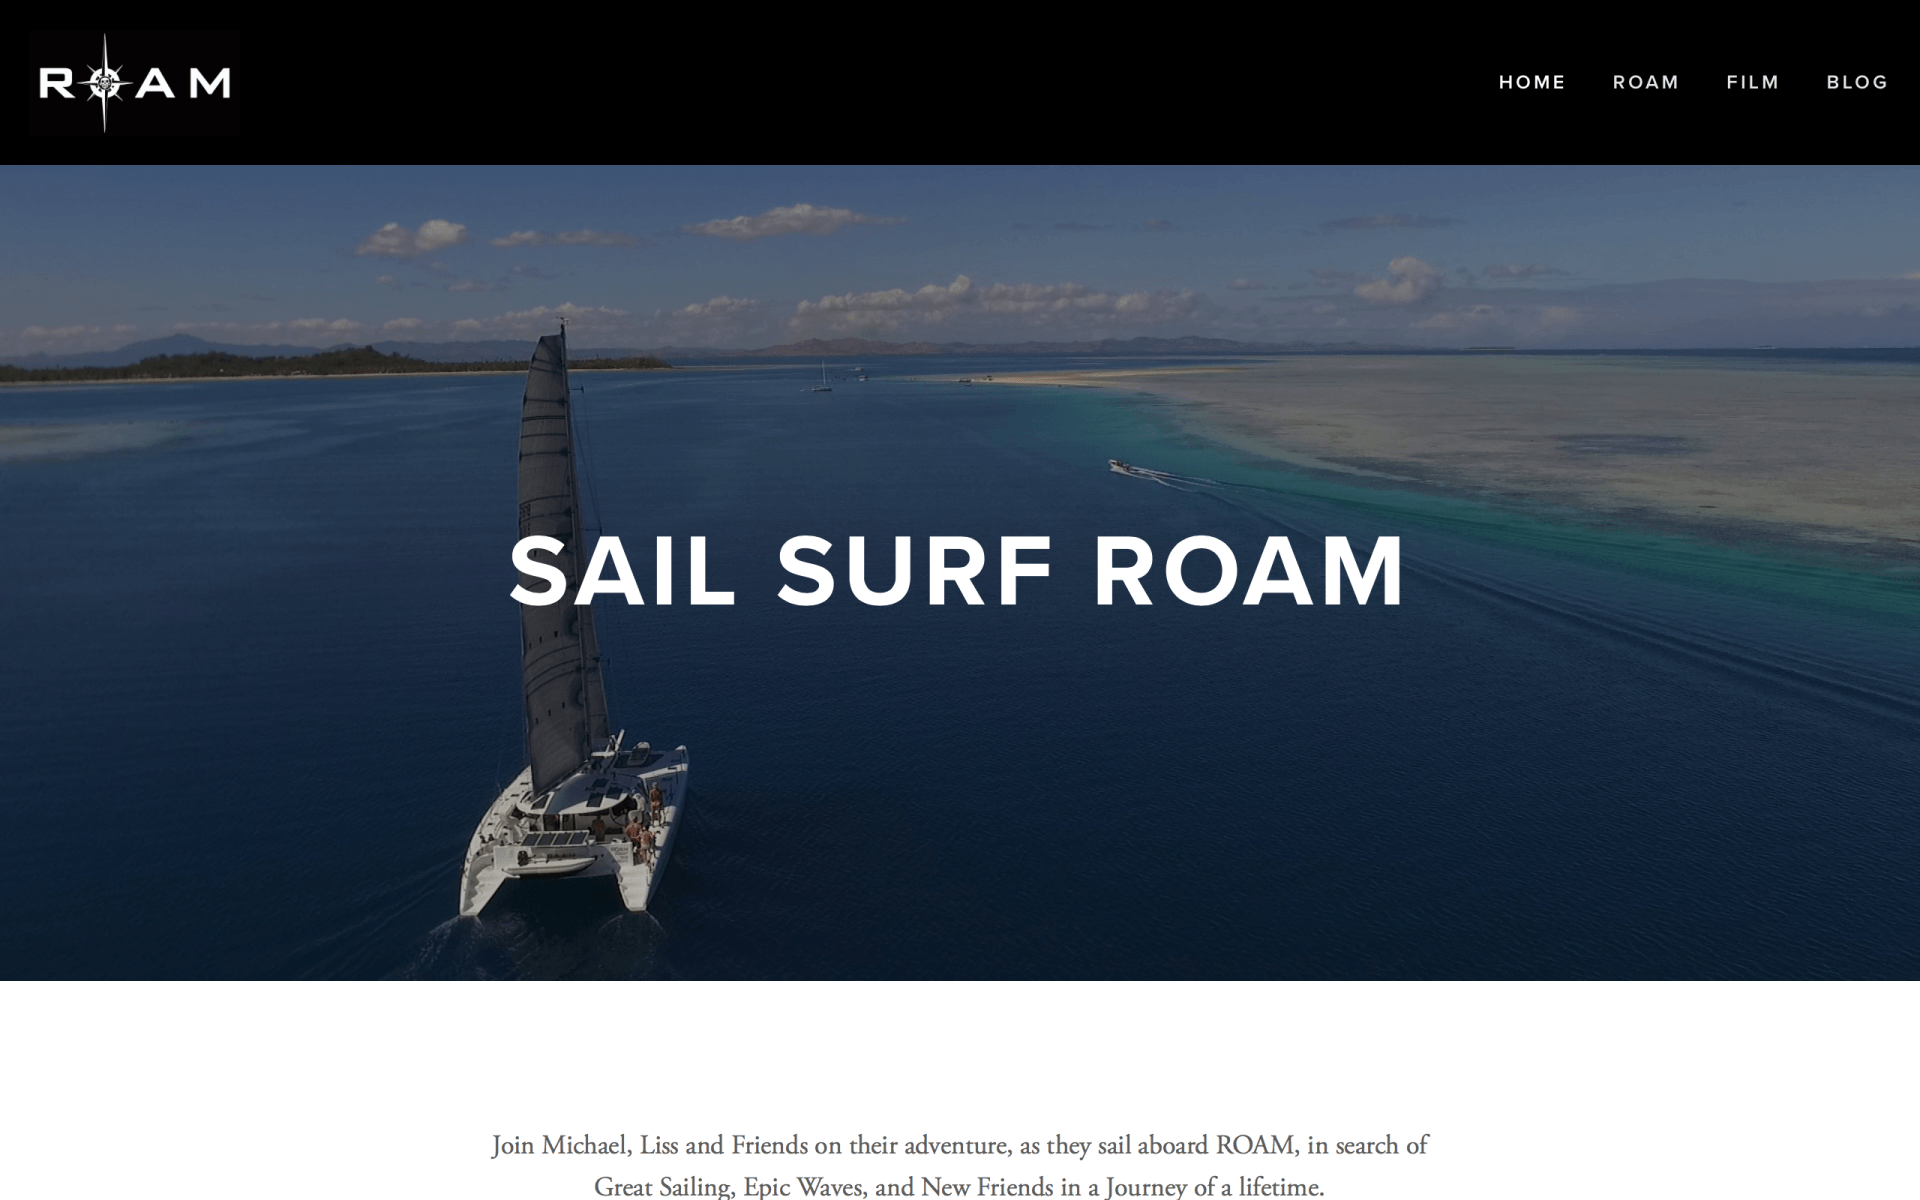 Sail Surf Room